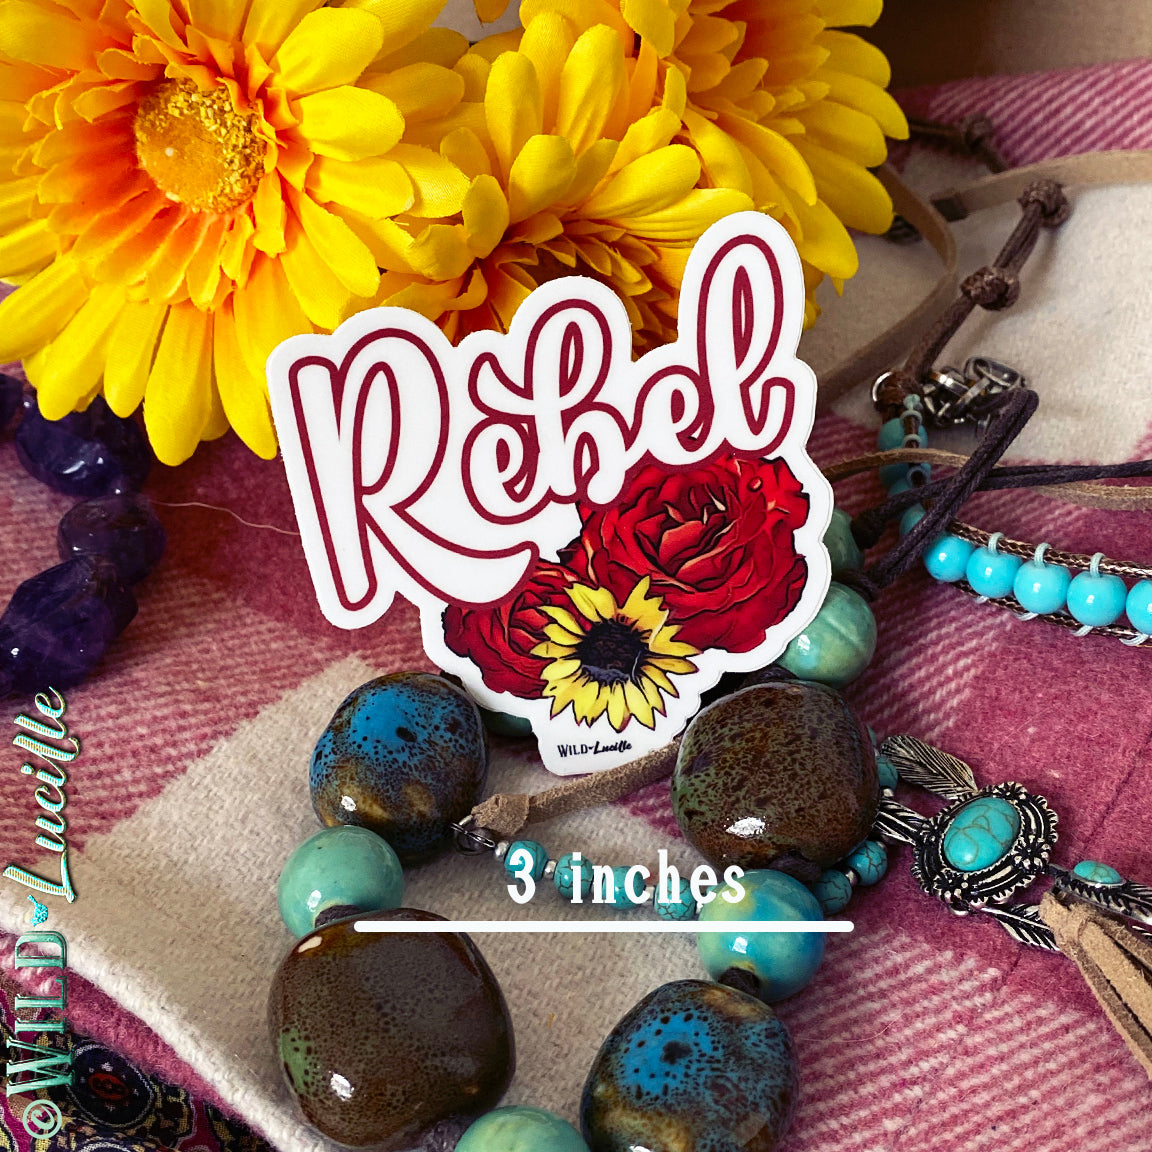 Rebel Rose - Boho Western Vinyl Sticker Decals